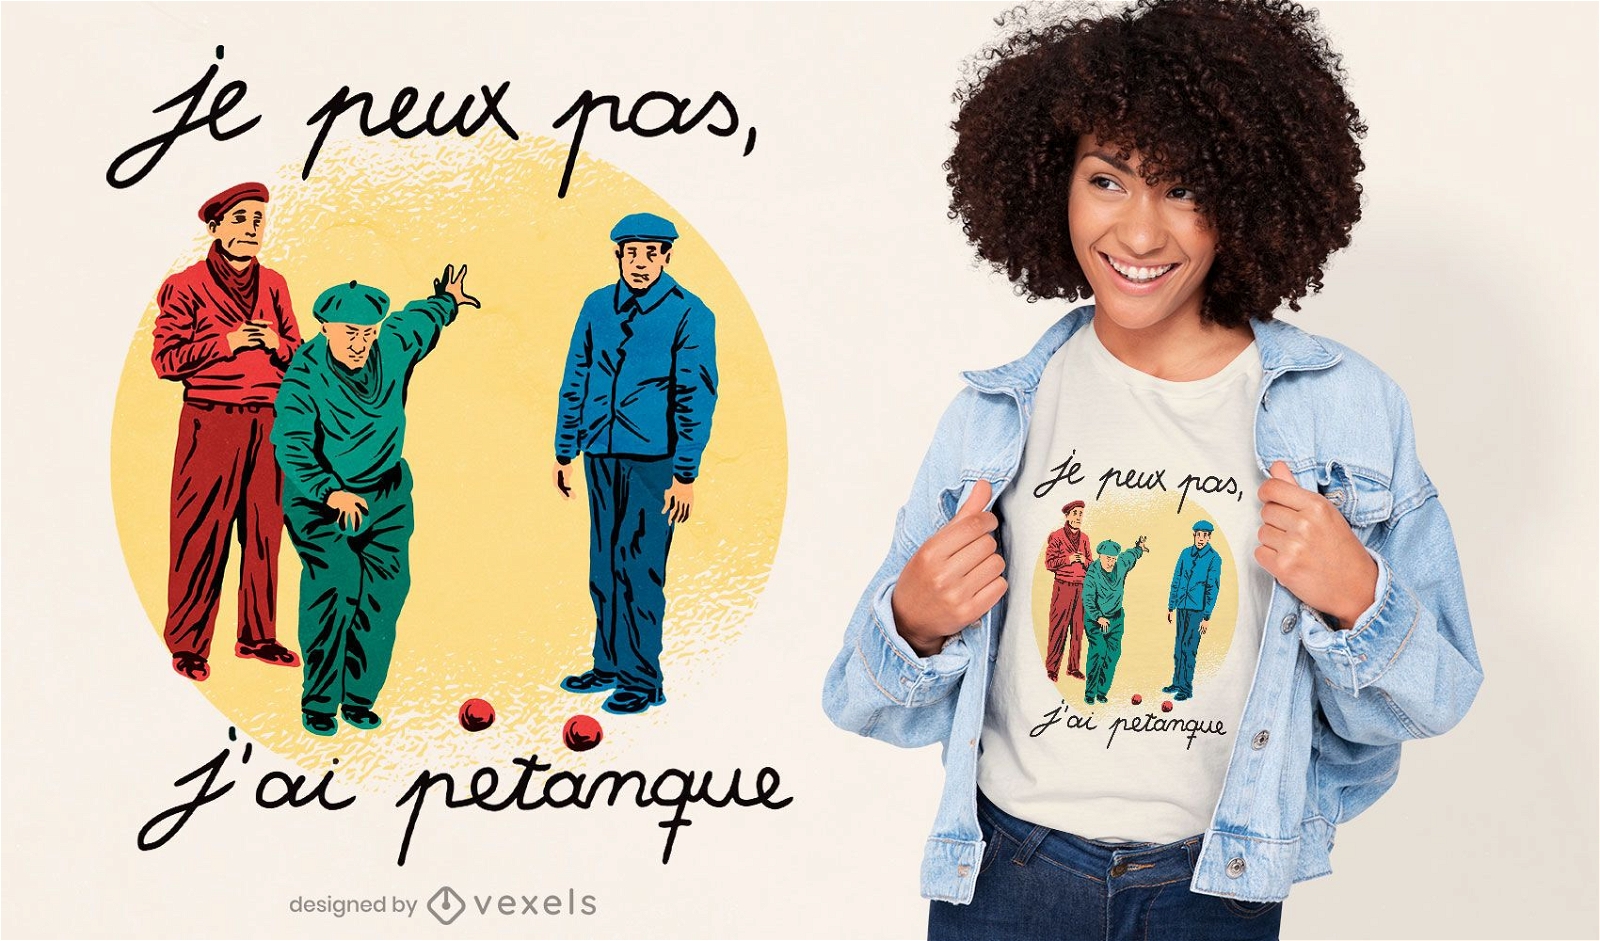 Franz?sisches Zitat-T-Shirt-Design von Petanque